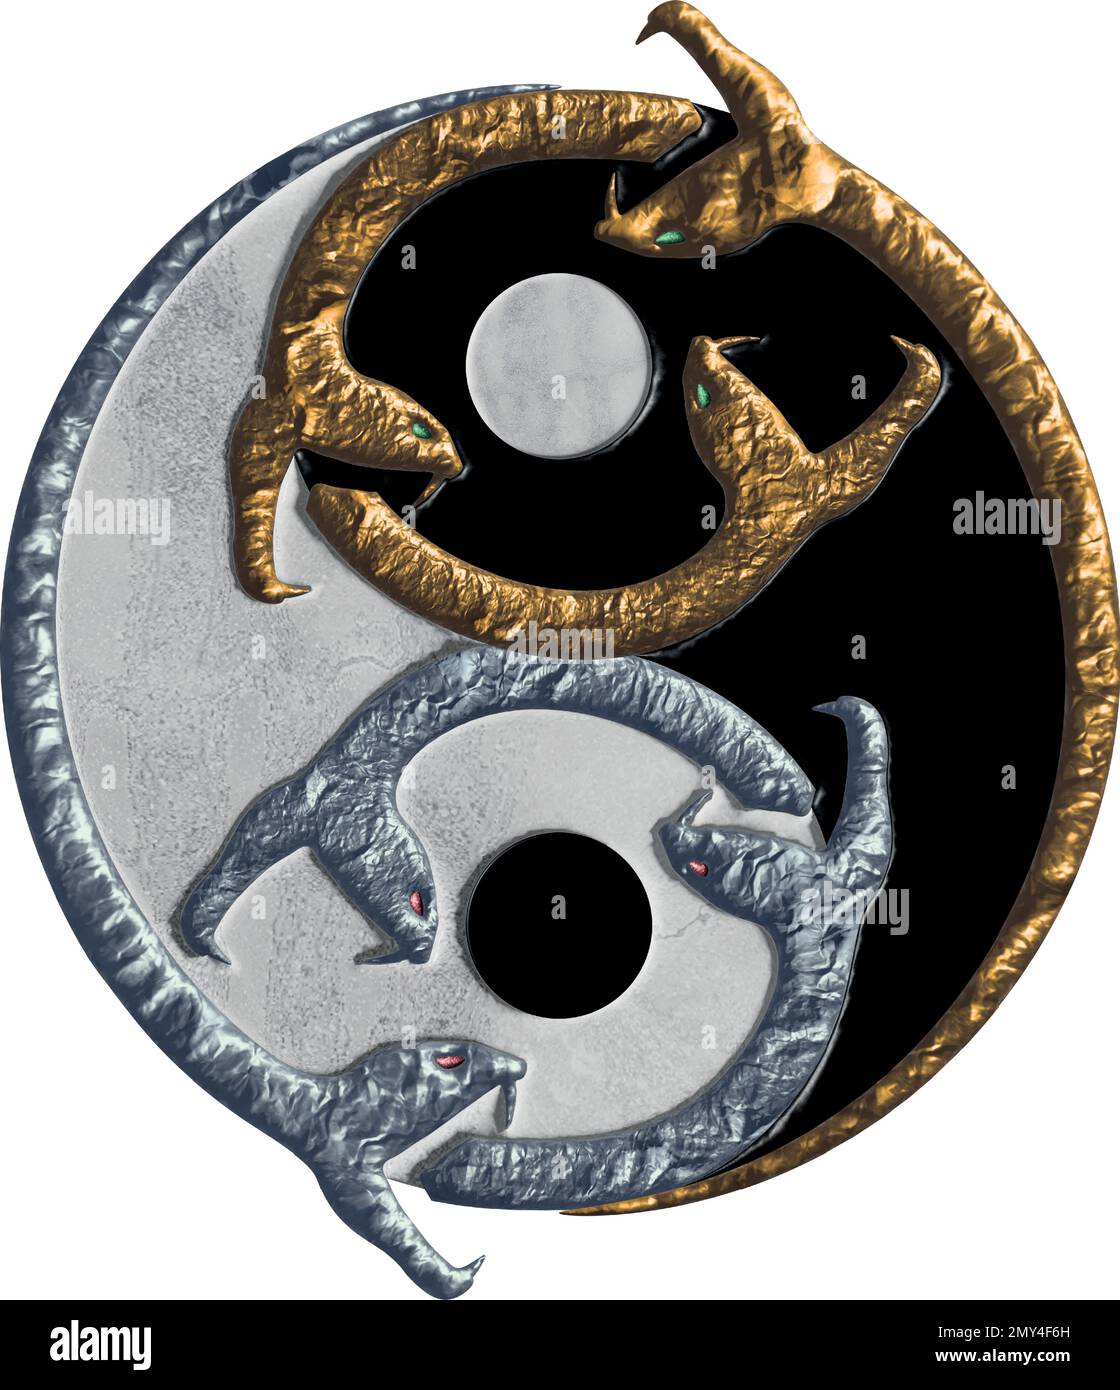 Symbole Tao / Yin Yang fait de serpents - argent et or Illustration de Vecteur